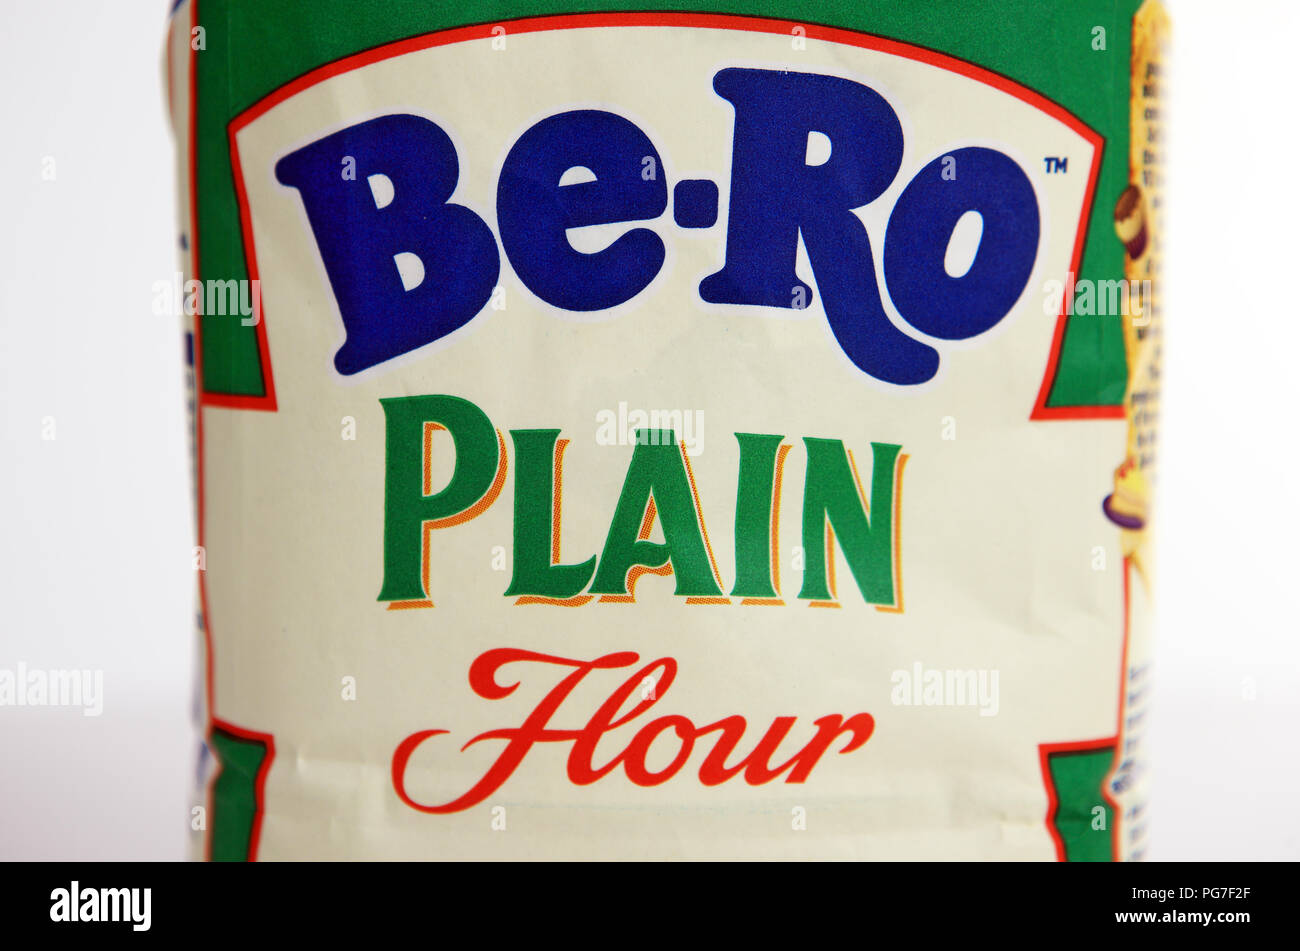 Be-Ro plain flour Stock Photo